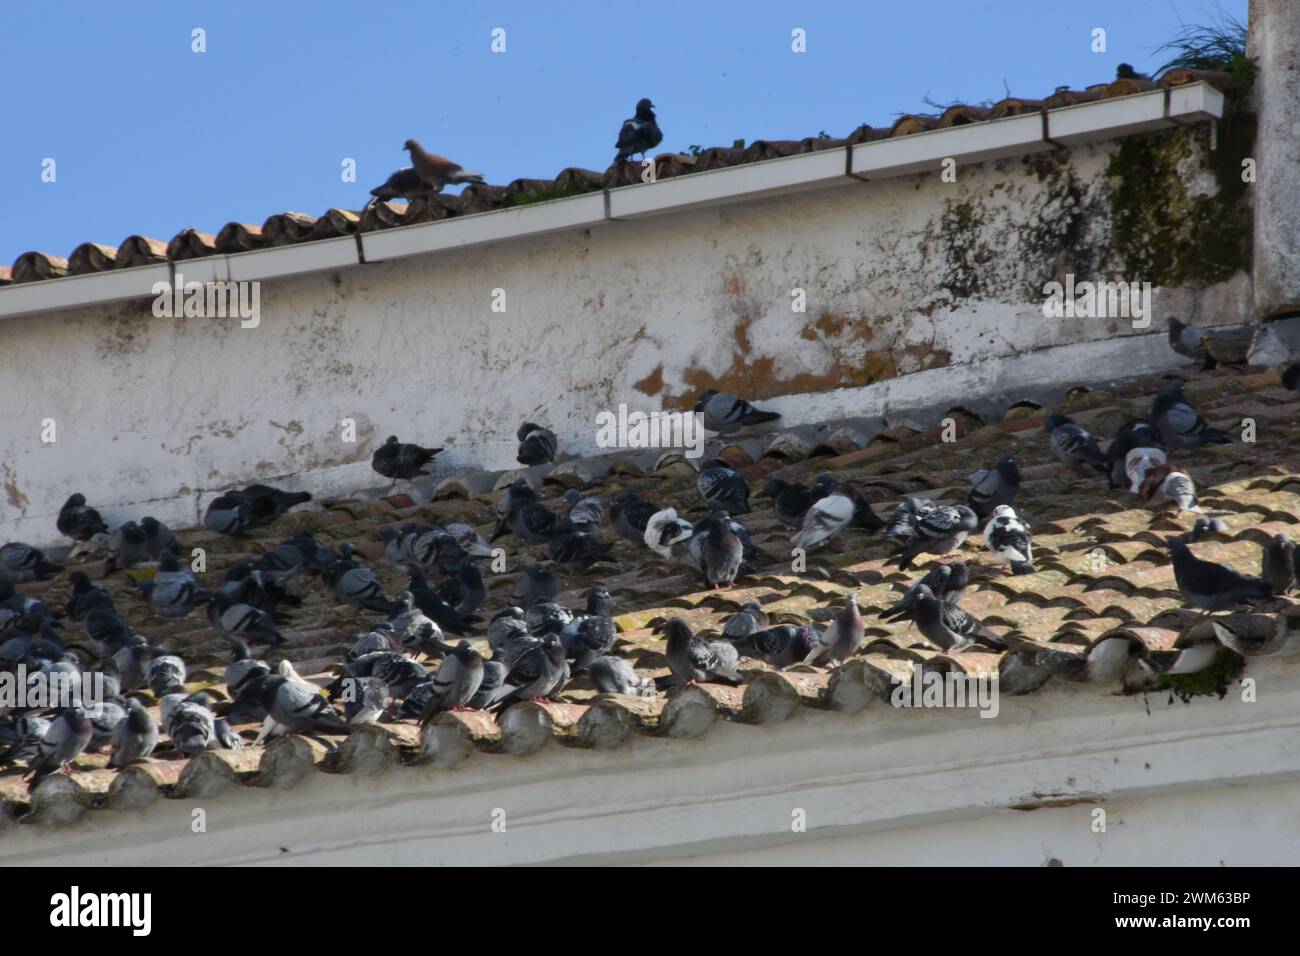 Repos des Tauben sur un toit à Faro, Portugal Stockfoto